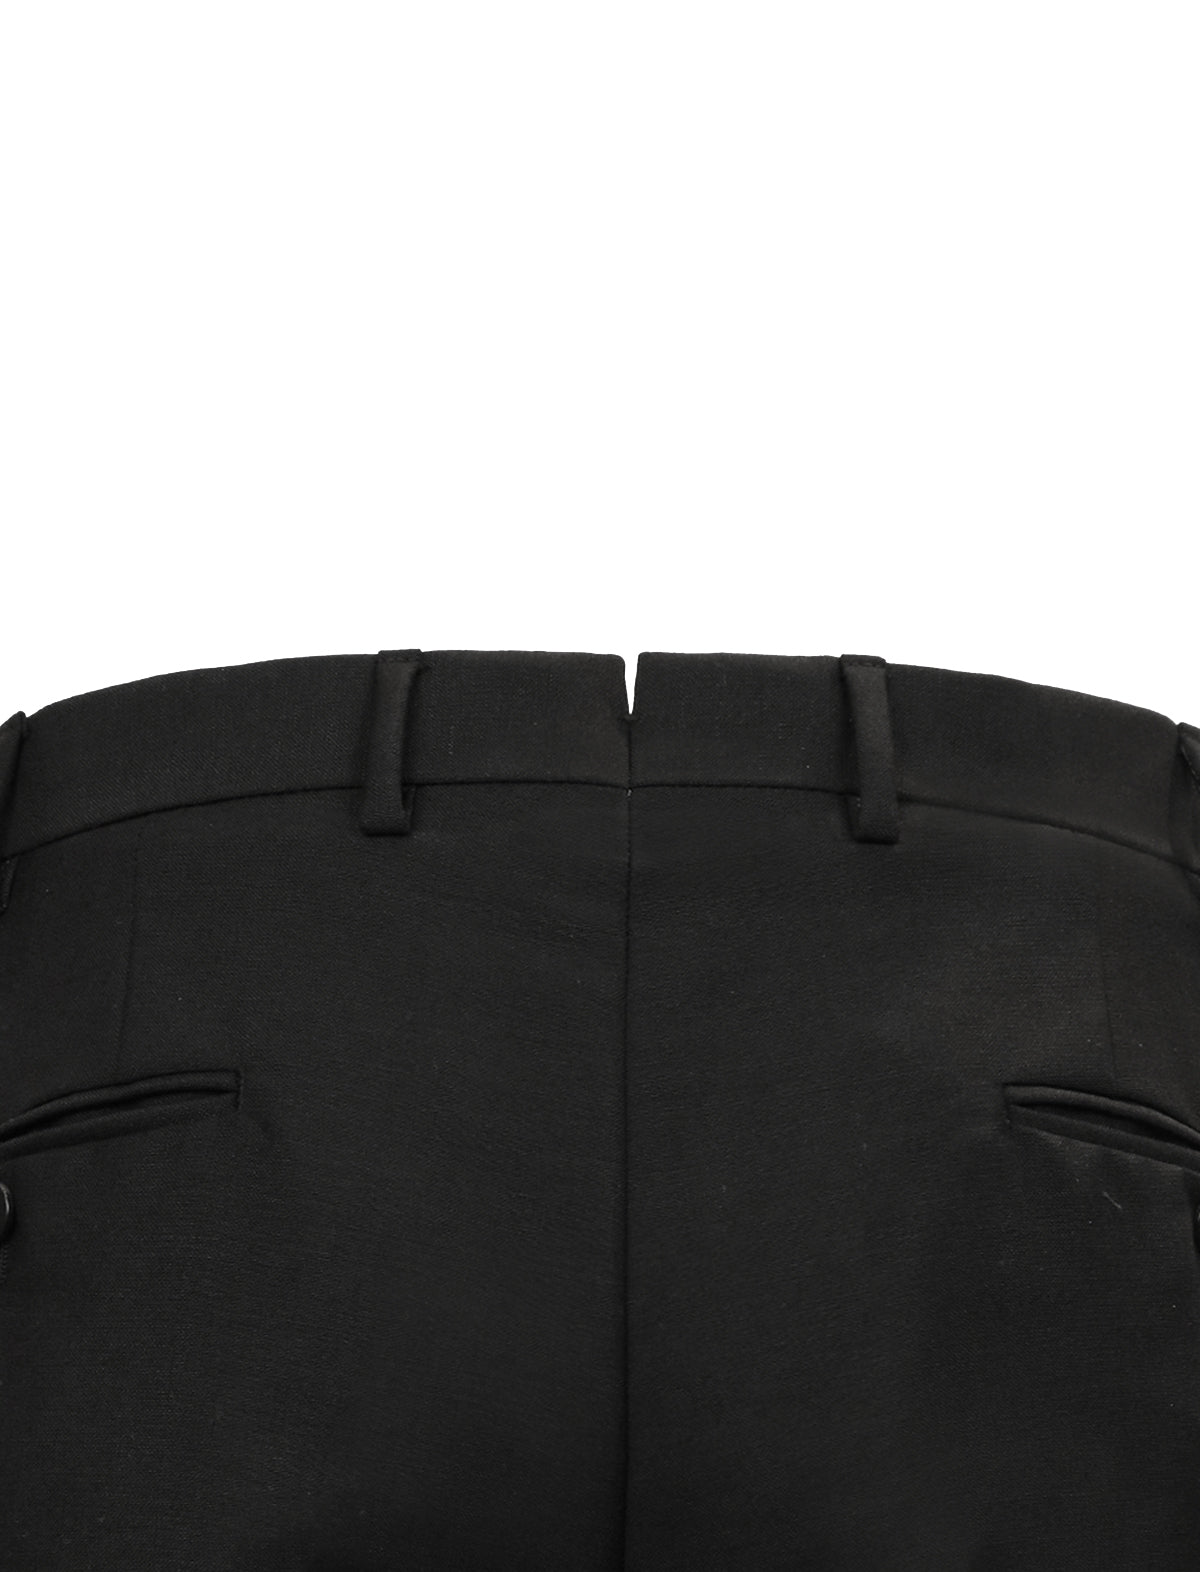 CARUSO Wool-Blend Trouser in Black